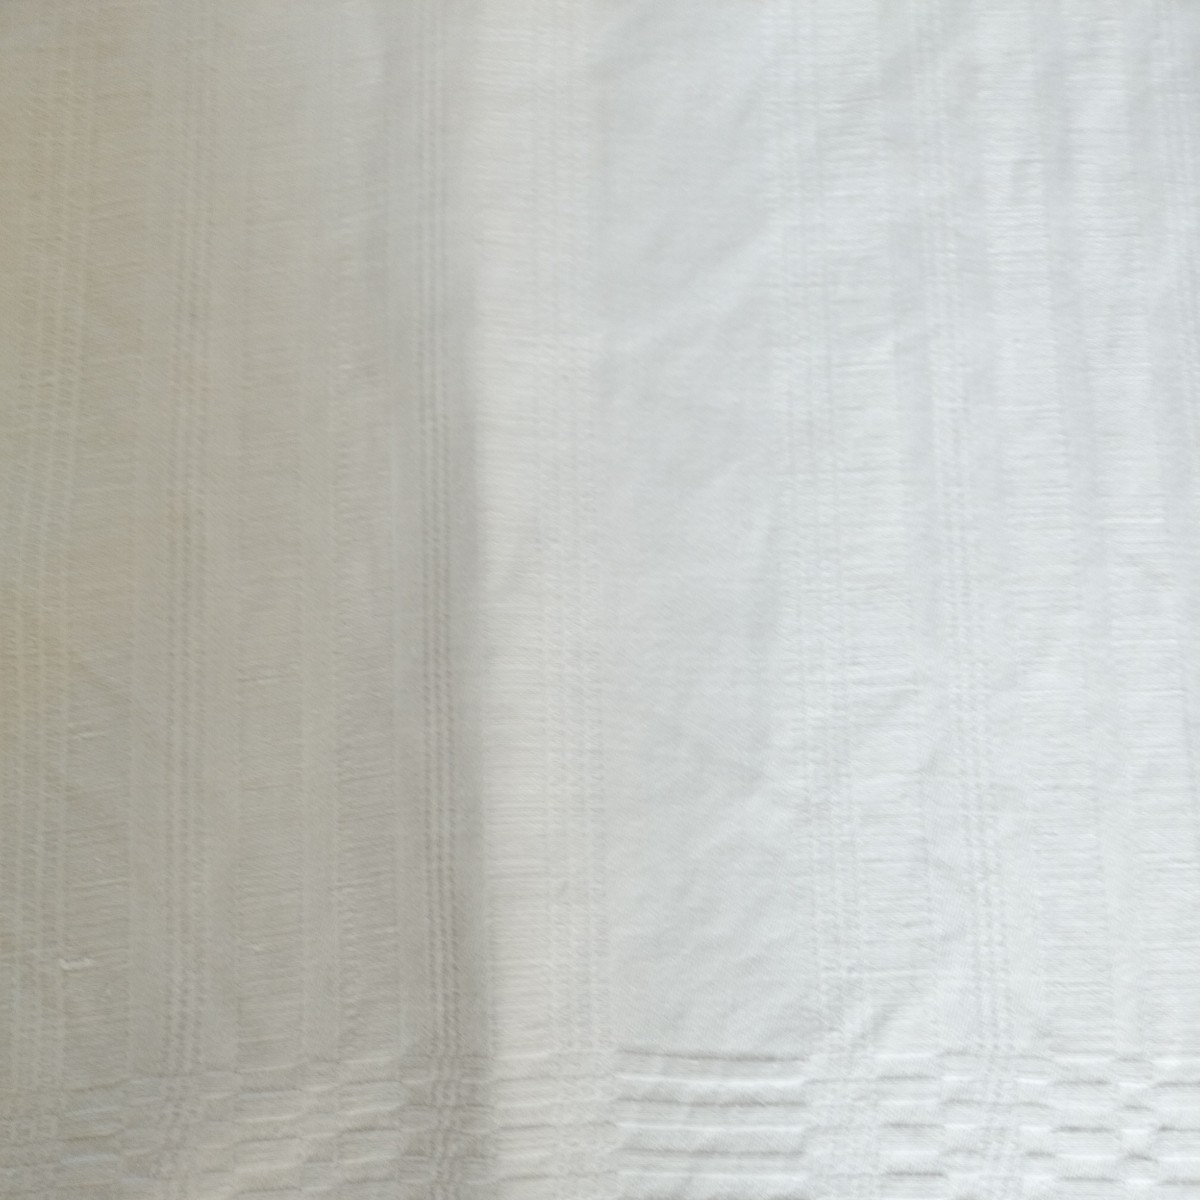 ダマスクリネンテキスタイル ヨーロッパセミアンティーク リネン100% テーブルクロス、掛布 手織布 ホワイト_画像3